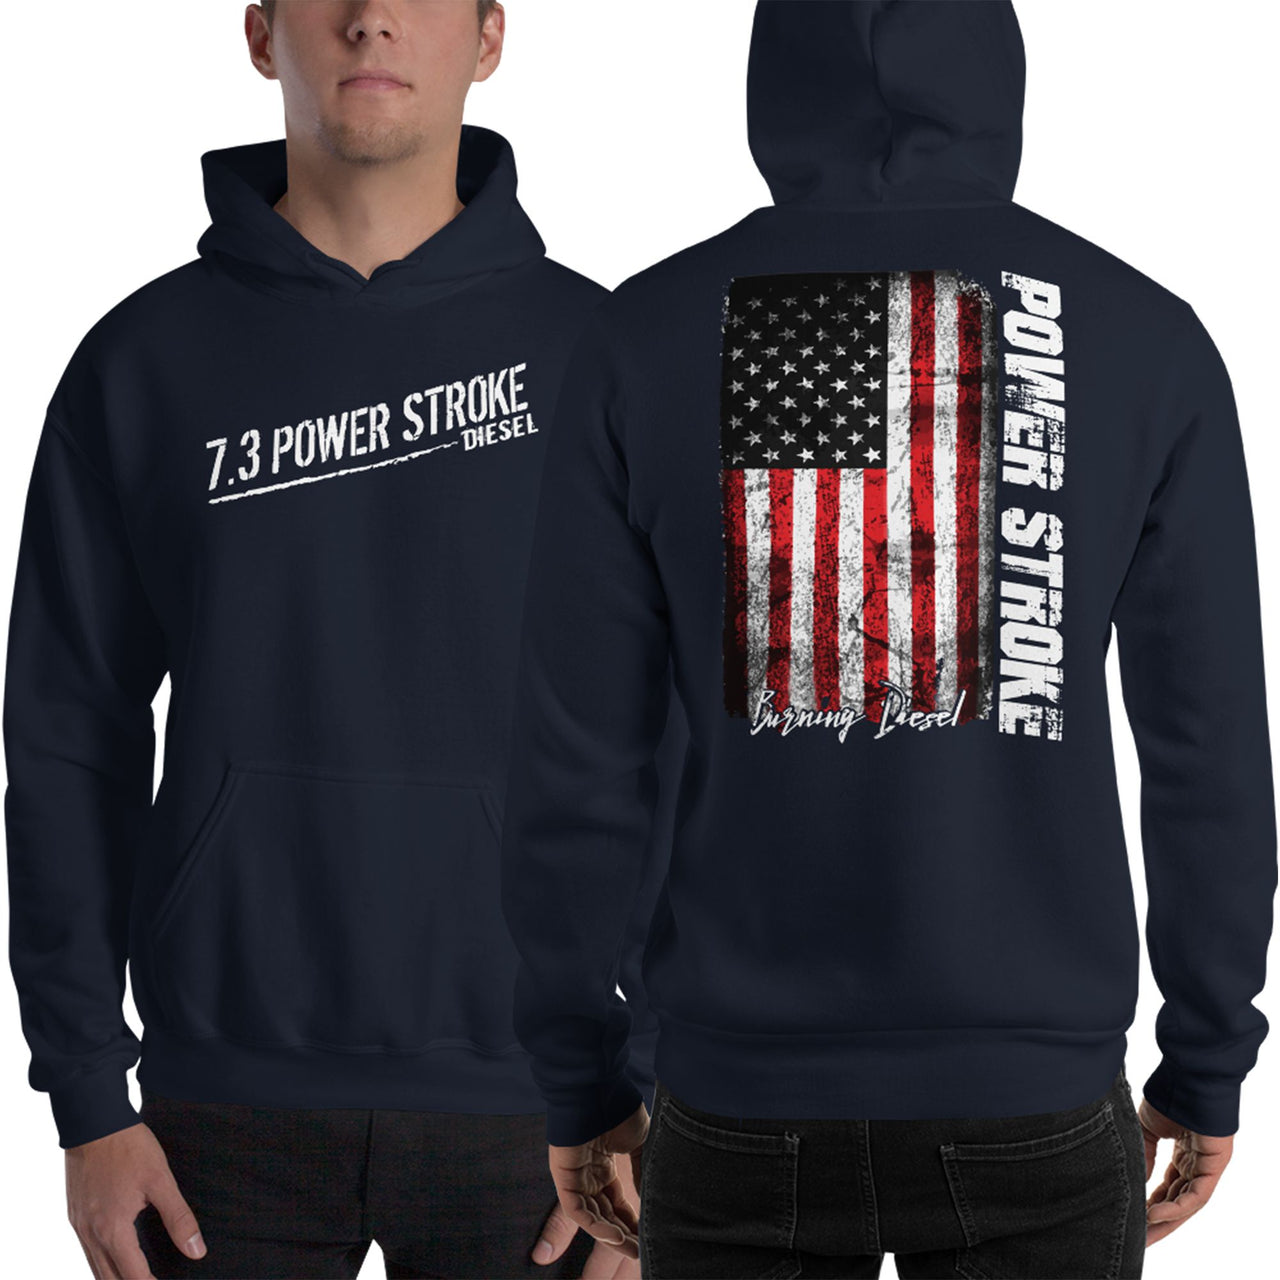 7.3 Power Stroke Diesel Hoodie, American Flag Sweatshirt modeled in navy